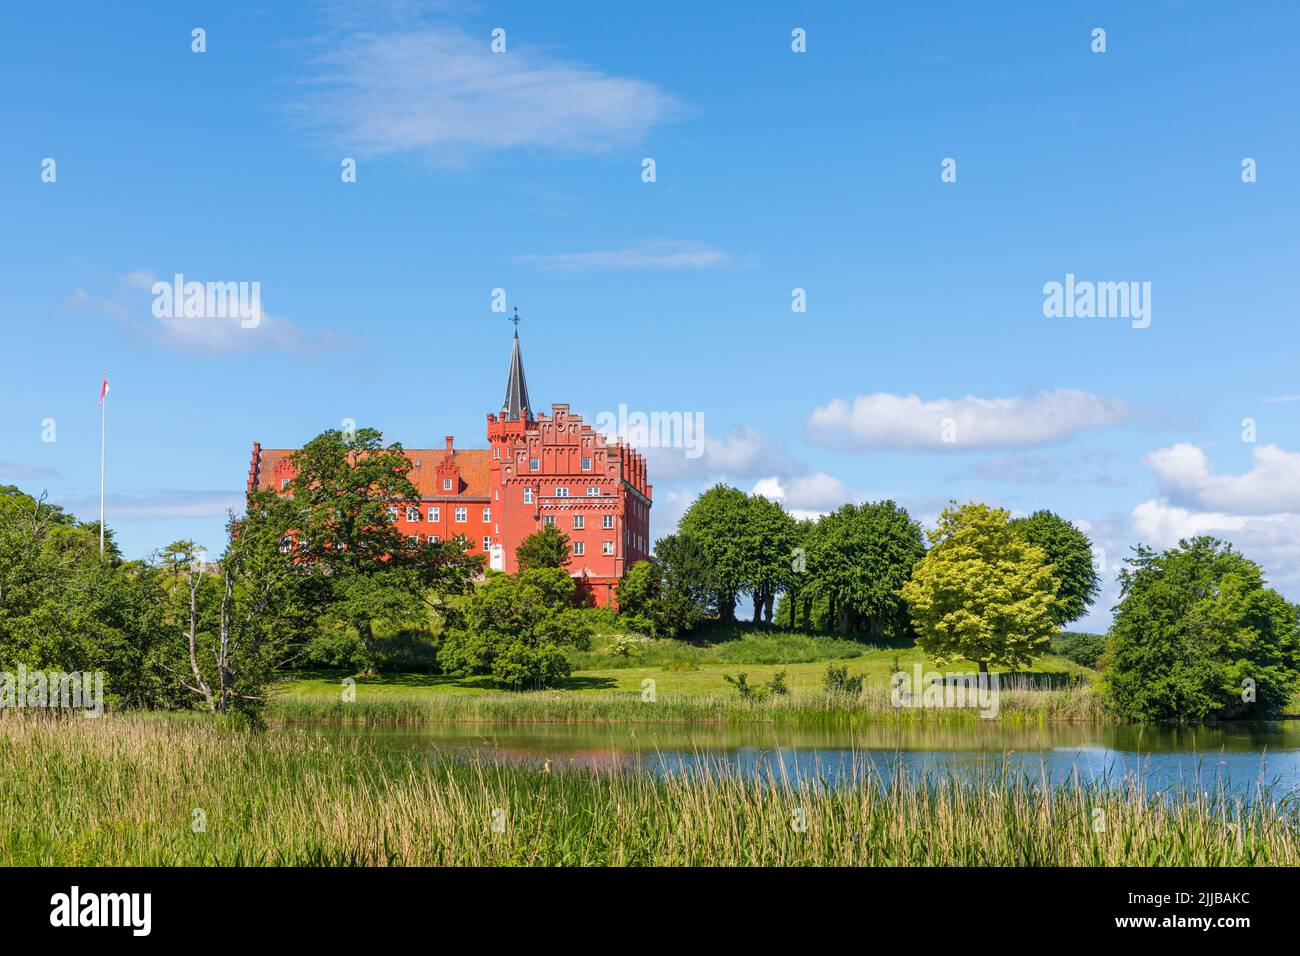 Castillo del siglo 13th y parl en Tranekær, isla de Langeland, Dinamarca Foto de stock